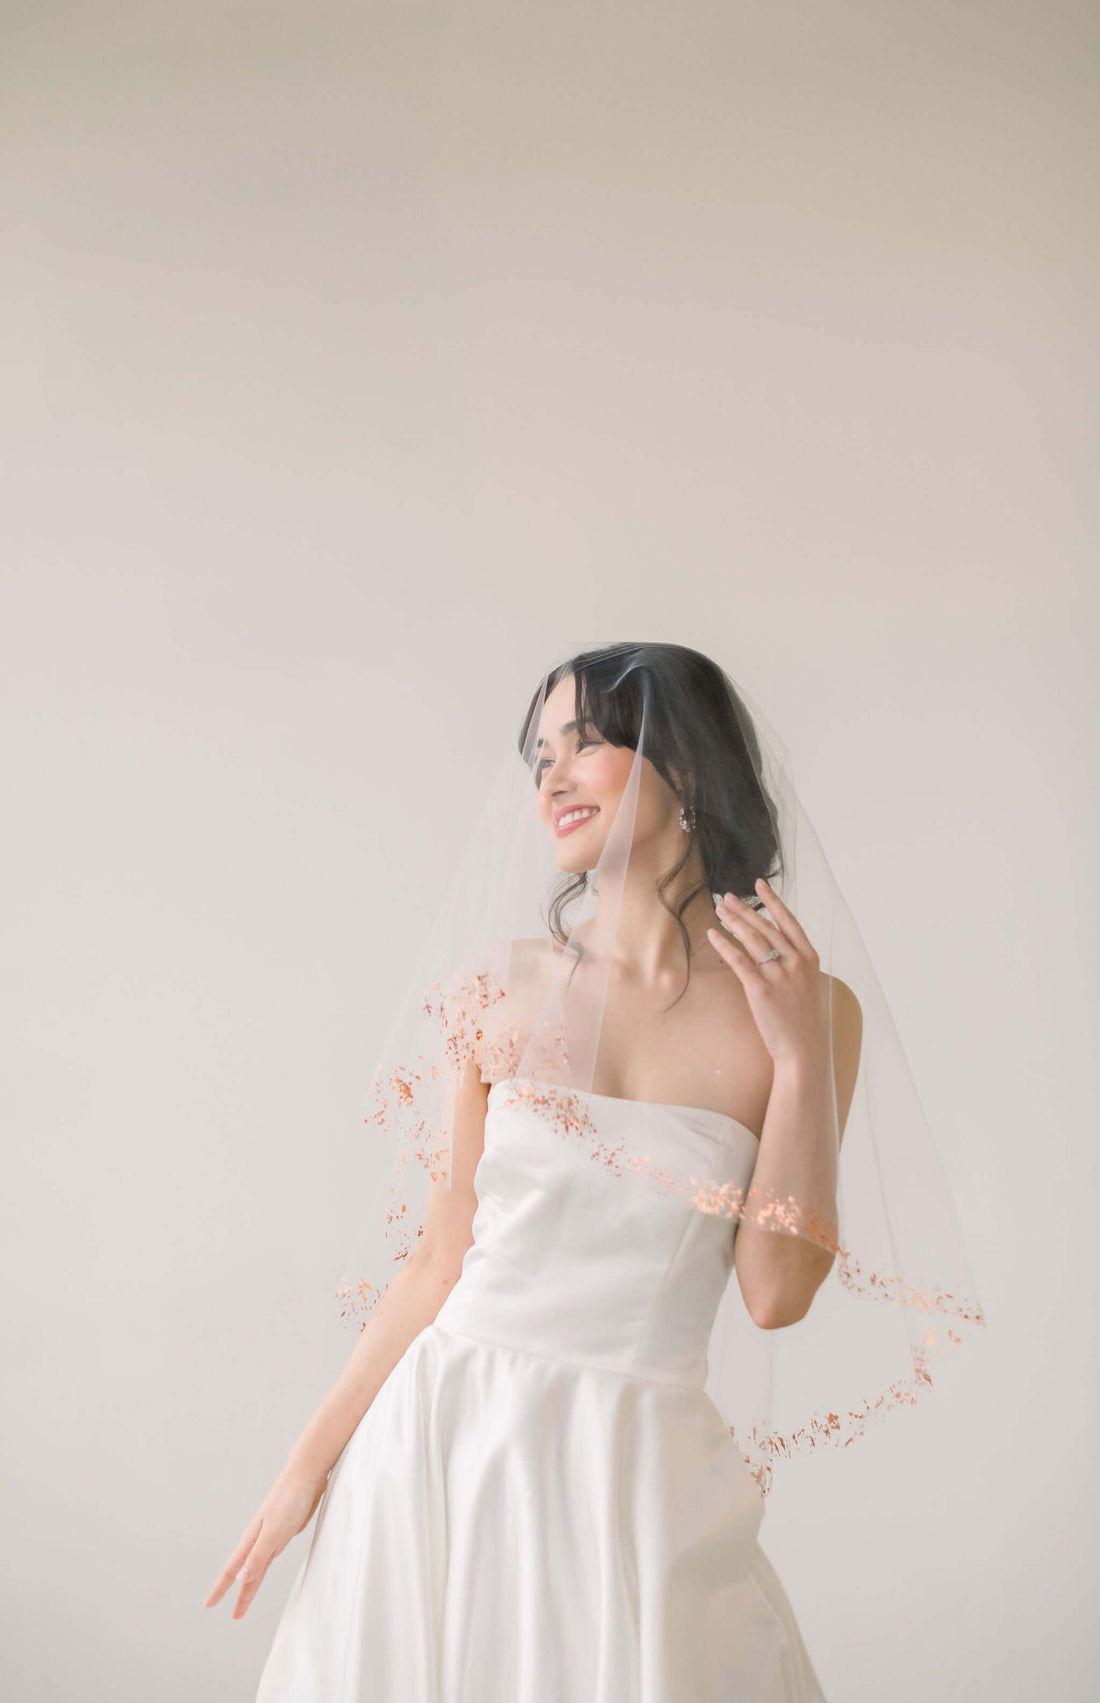 How do you attach a no-comb wedding veil? Tessa Kim